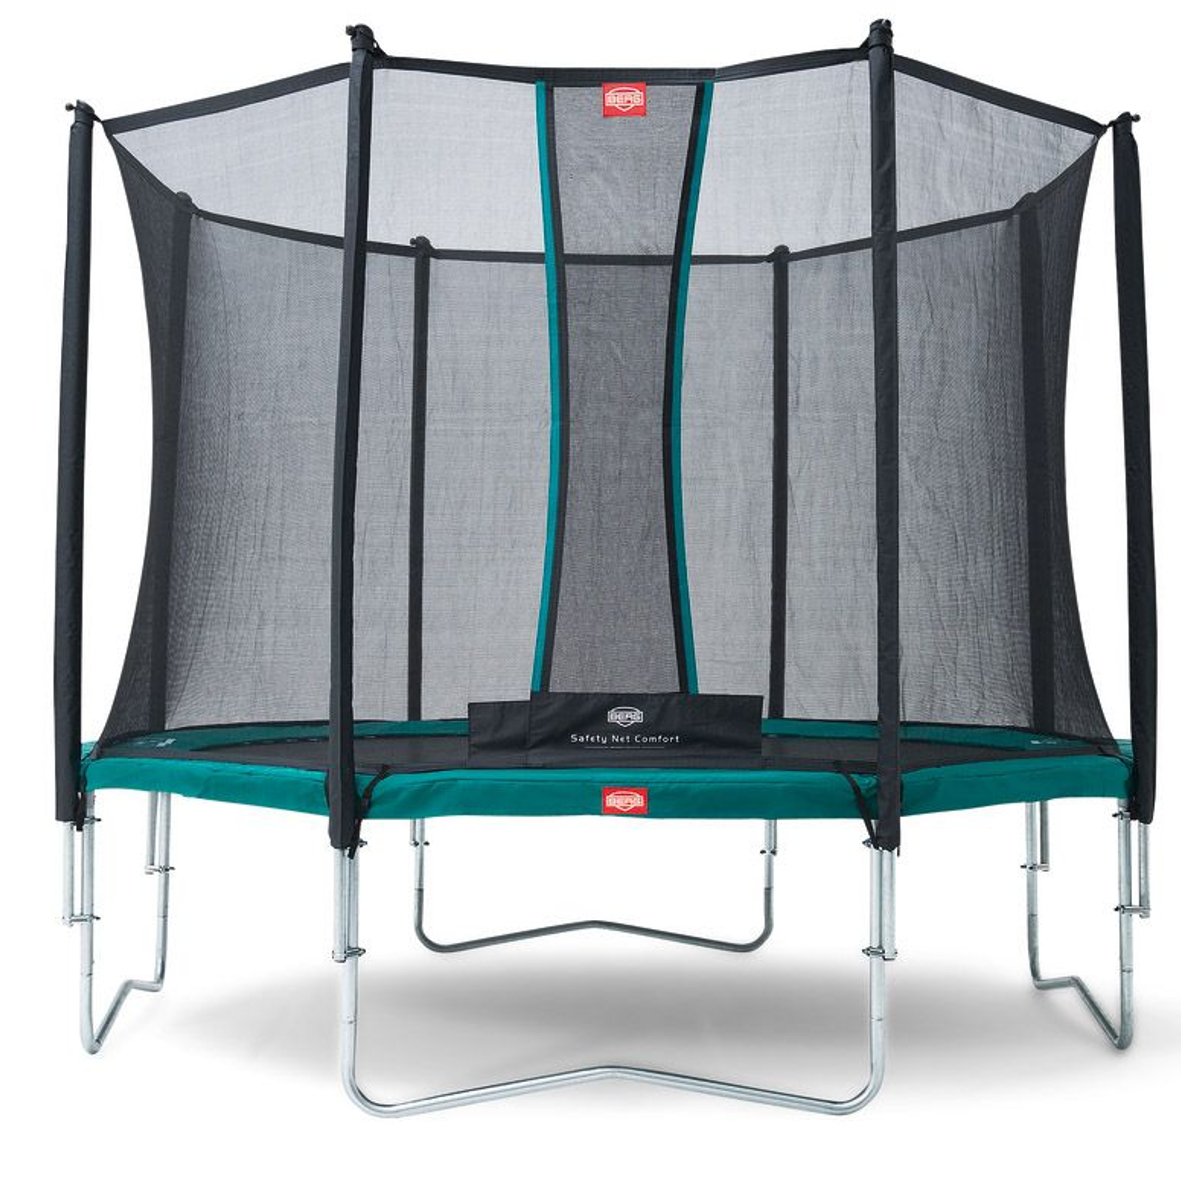 Berg Favorit Trampoline 430 + Safety Net Comfort